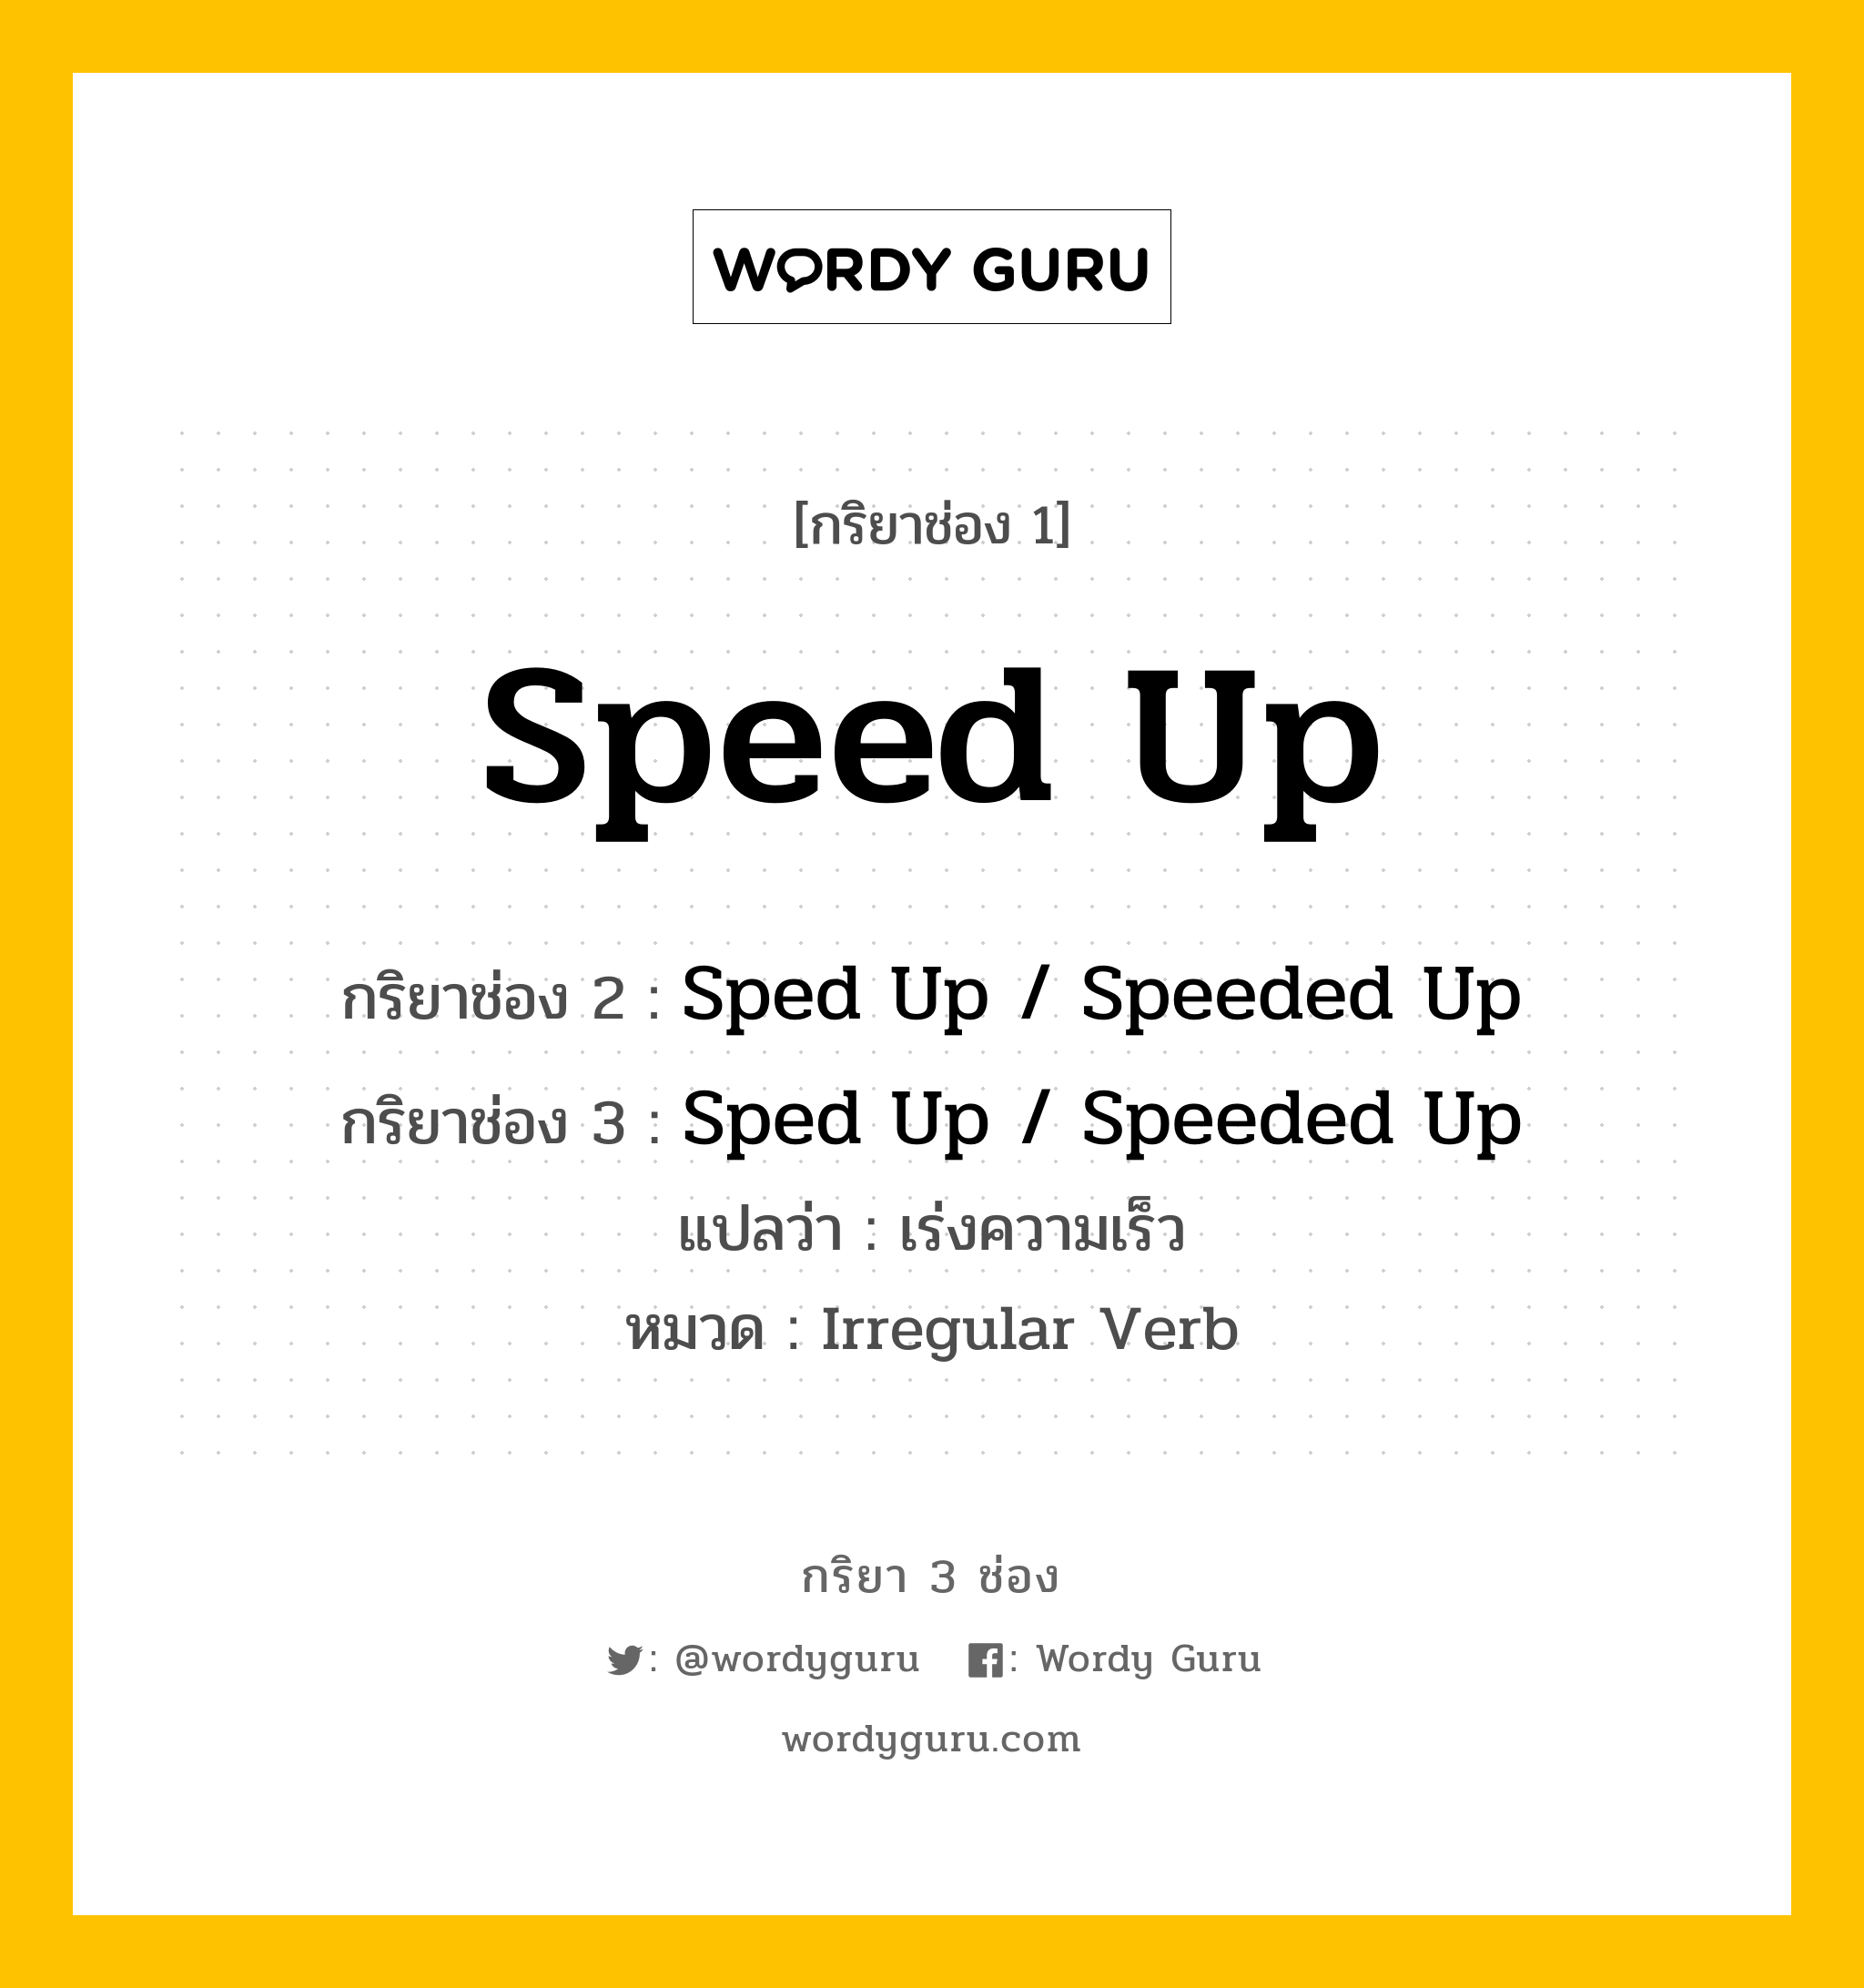 กริยา 3 ช่อง: Speed Up ช่อง 2 Speed Up ช่อง 3 คืออะไร, กริยาช่อง 1 Speed Up กริยาช่อง 2 Sped Up / Speeded Up กริยาช่อง 3 Sped Up / Speeded Up แปลว่า เร่งความเร็ว หมวด Irregular Verb หมวด Irregular Verb